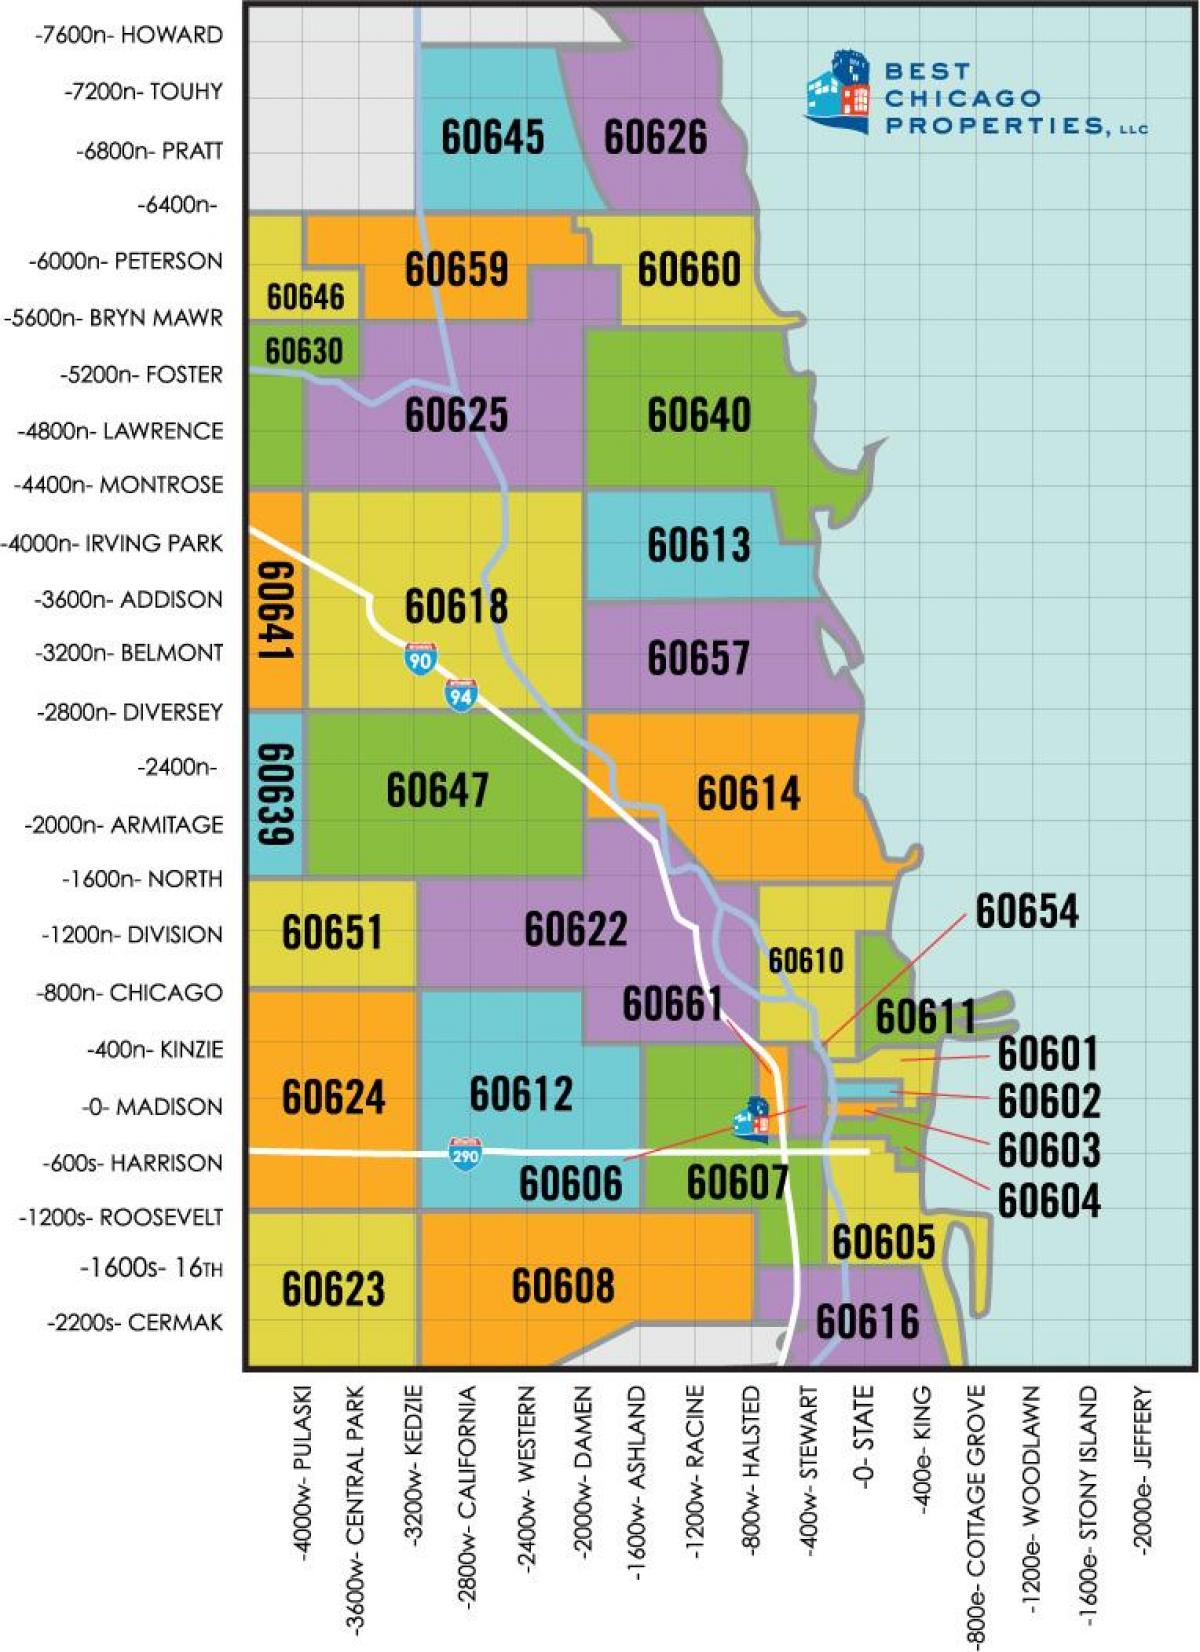 Omgeving van Chicago postcode kaart